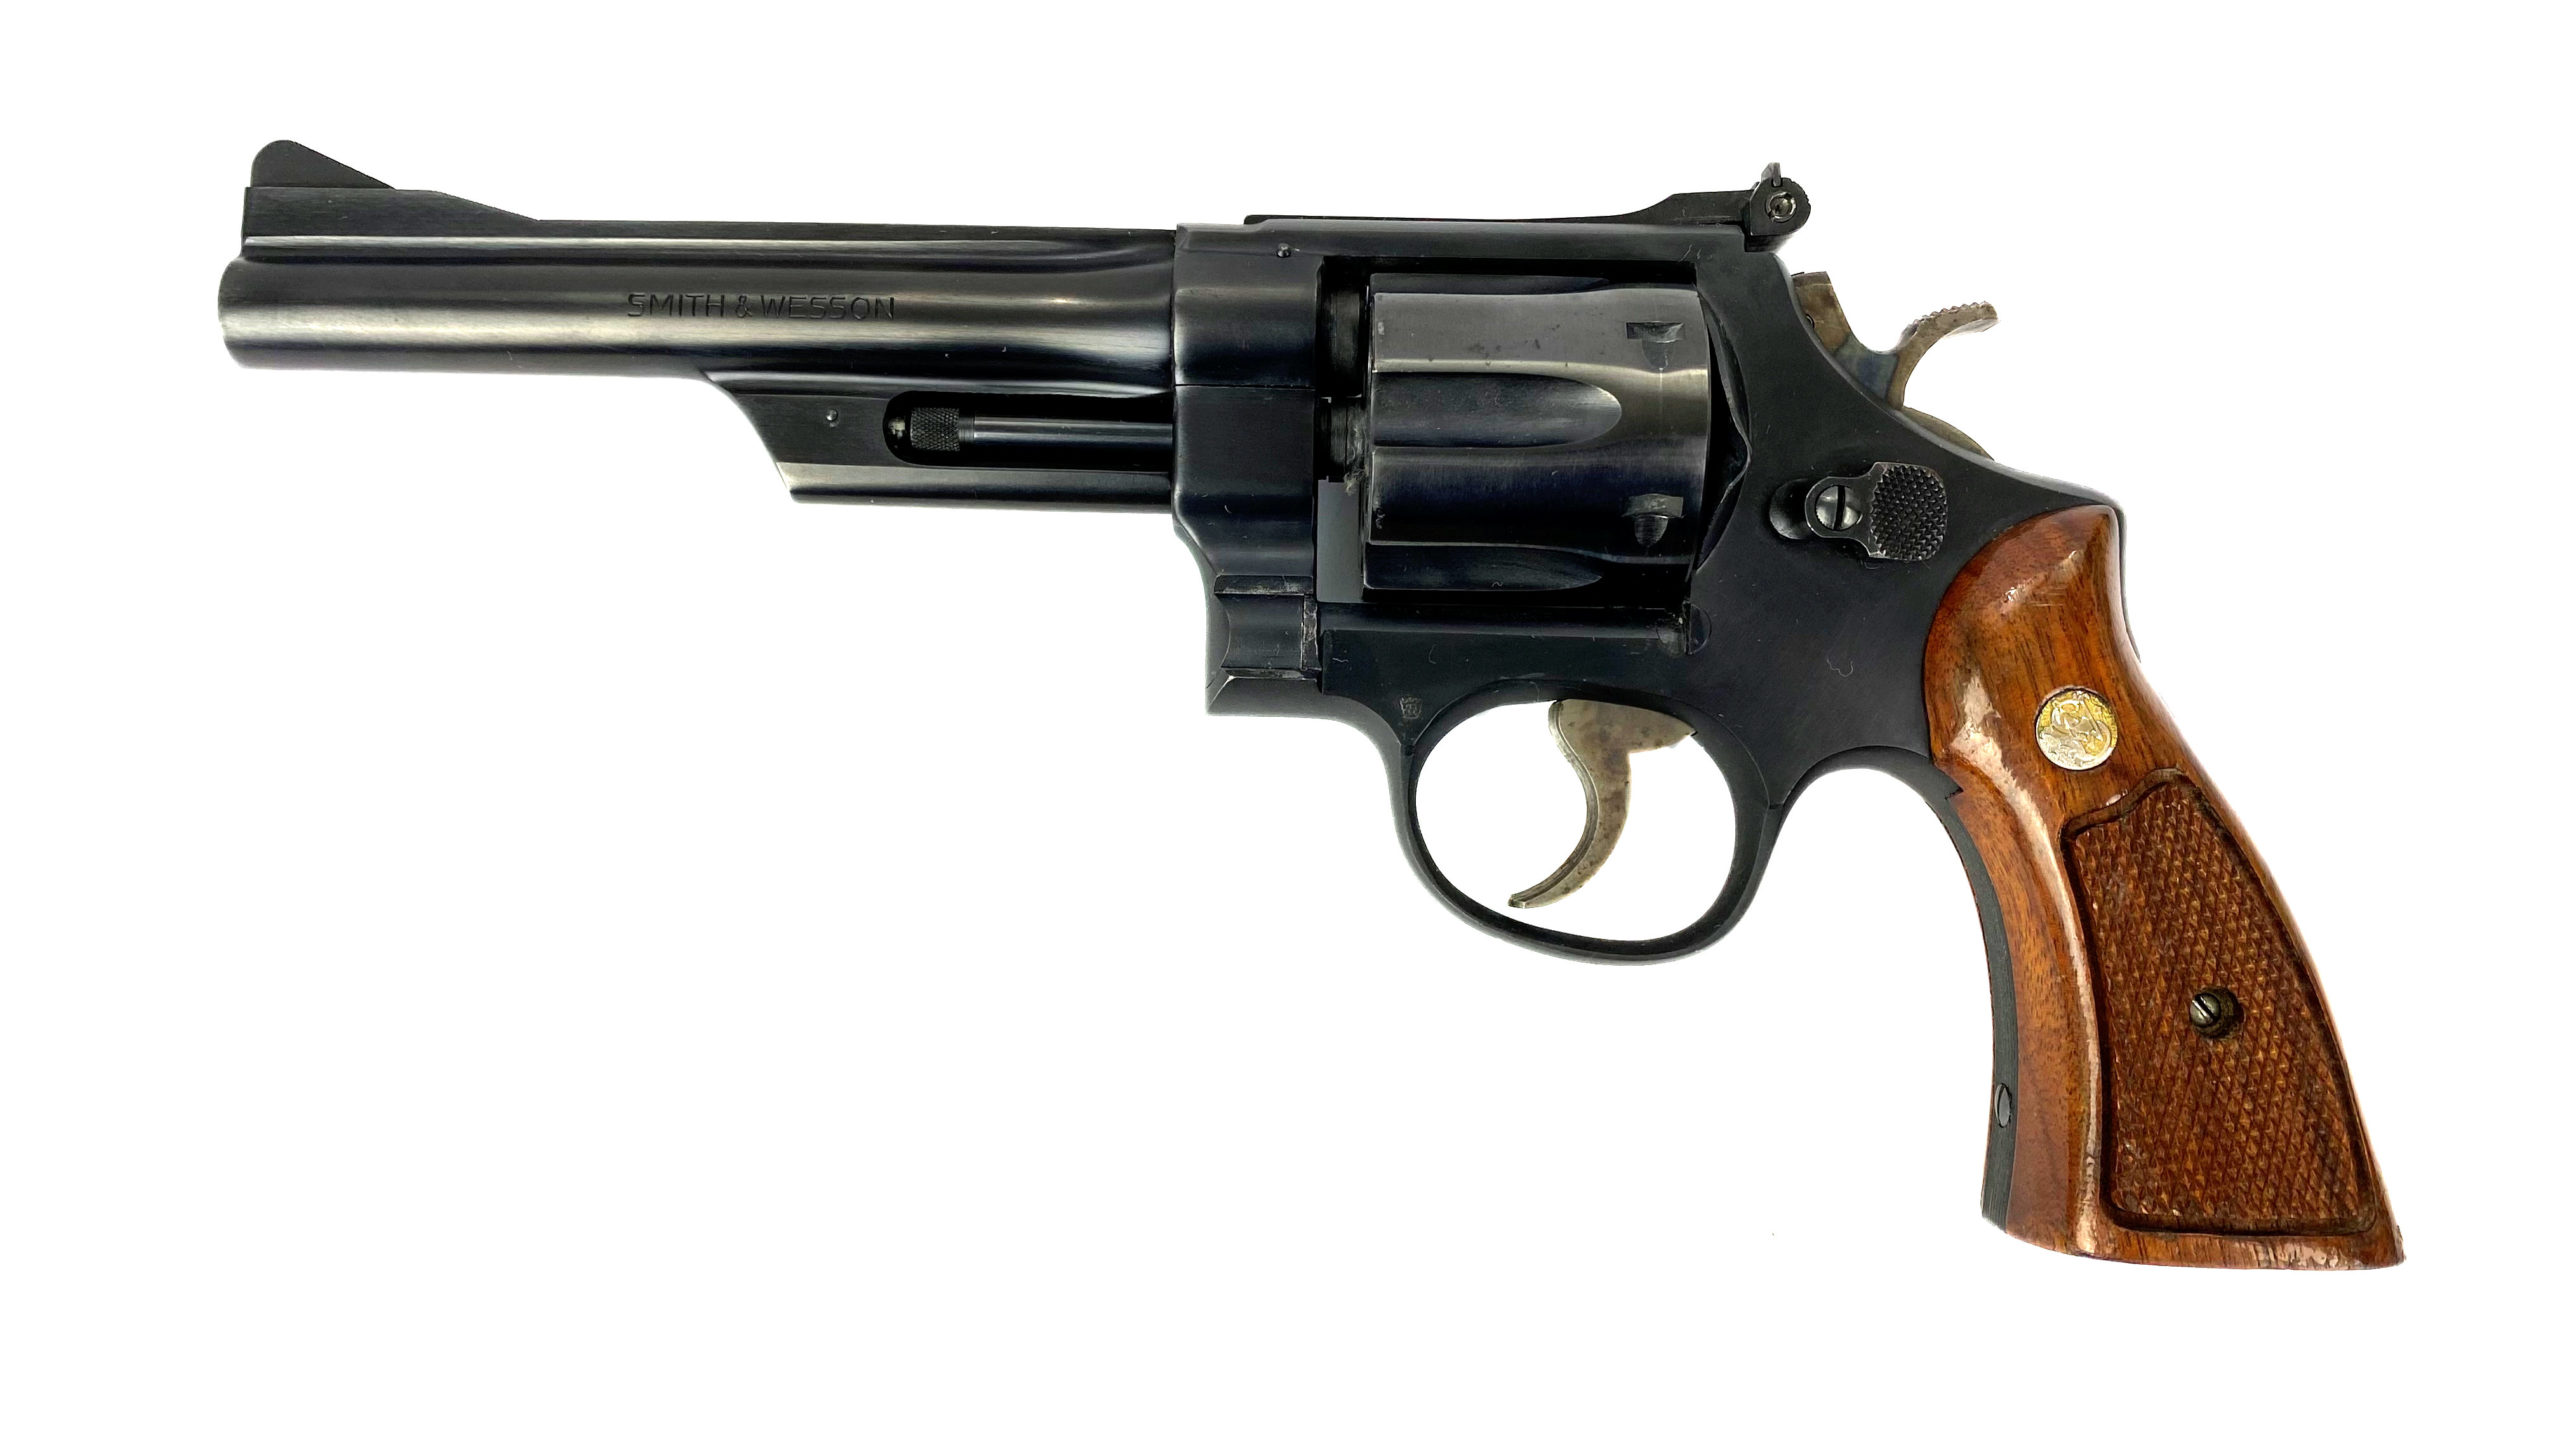 SMITH & WESSON modèle 28 calibre 357 Magnum